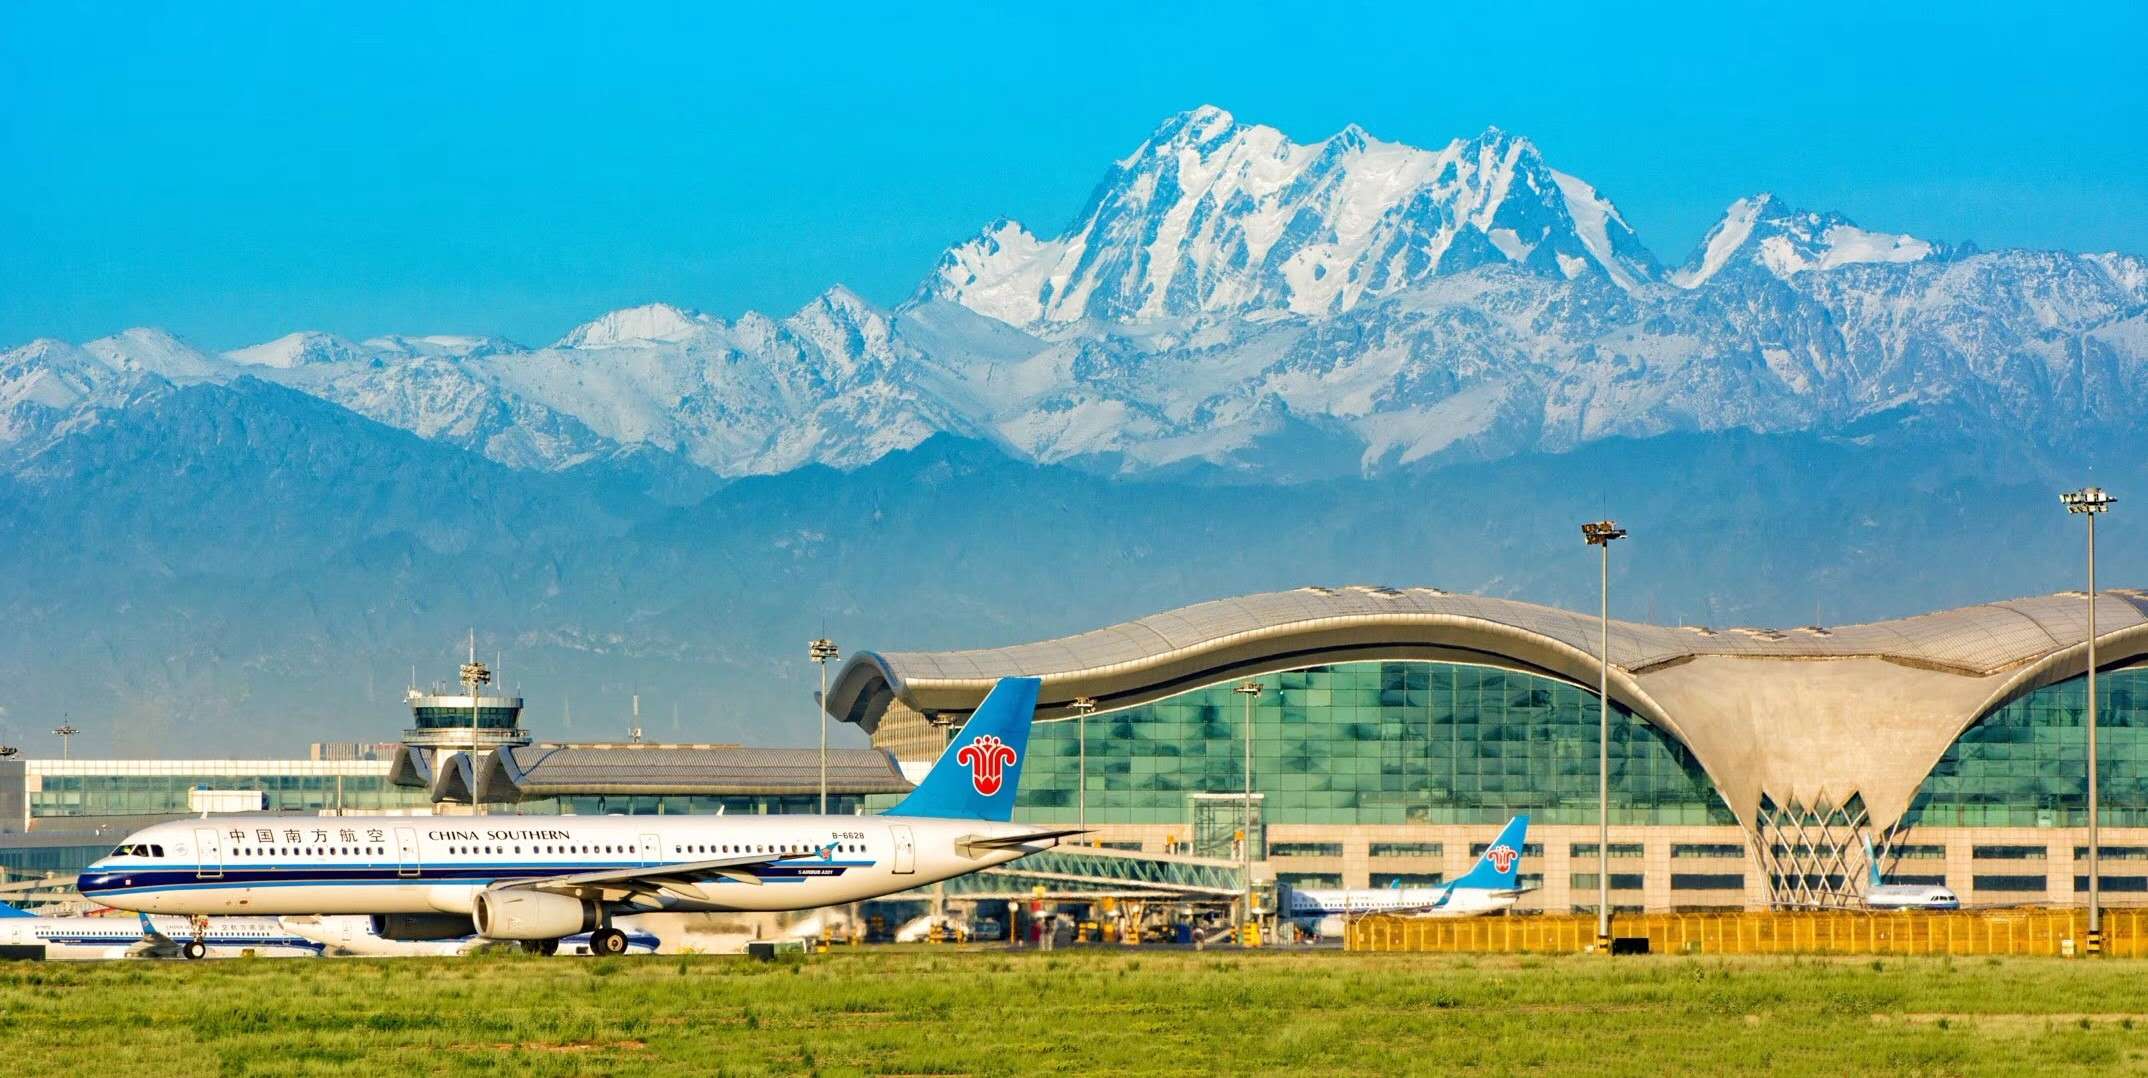 乌鲁木齐国际机场全景目前新疆机场集团2020年计划实施的十个机场